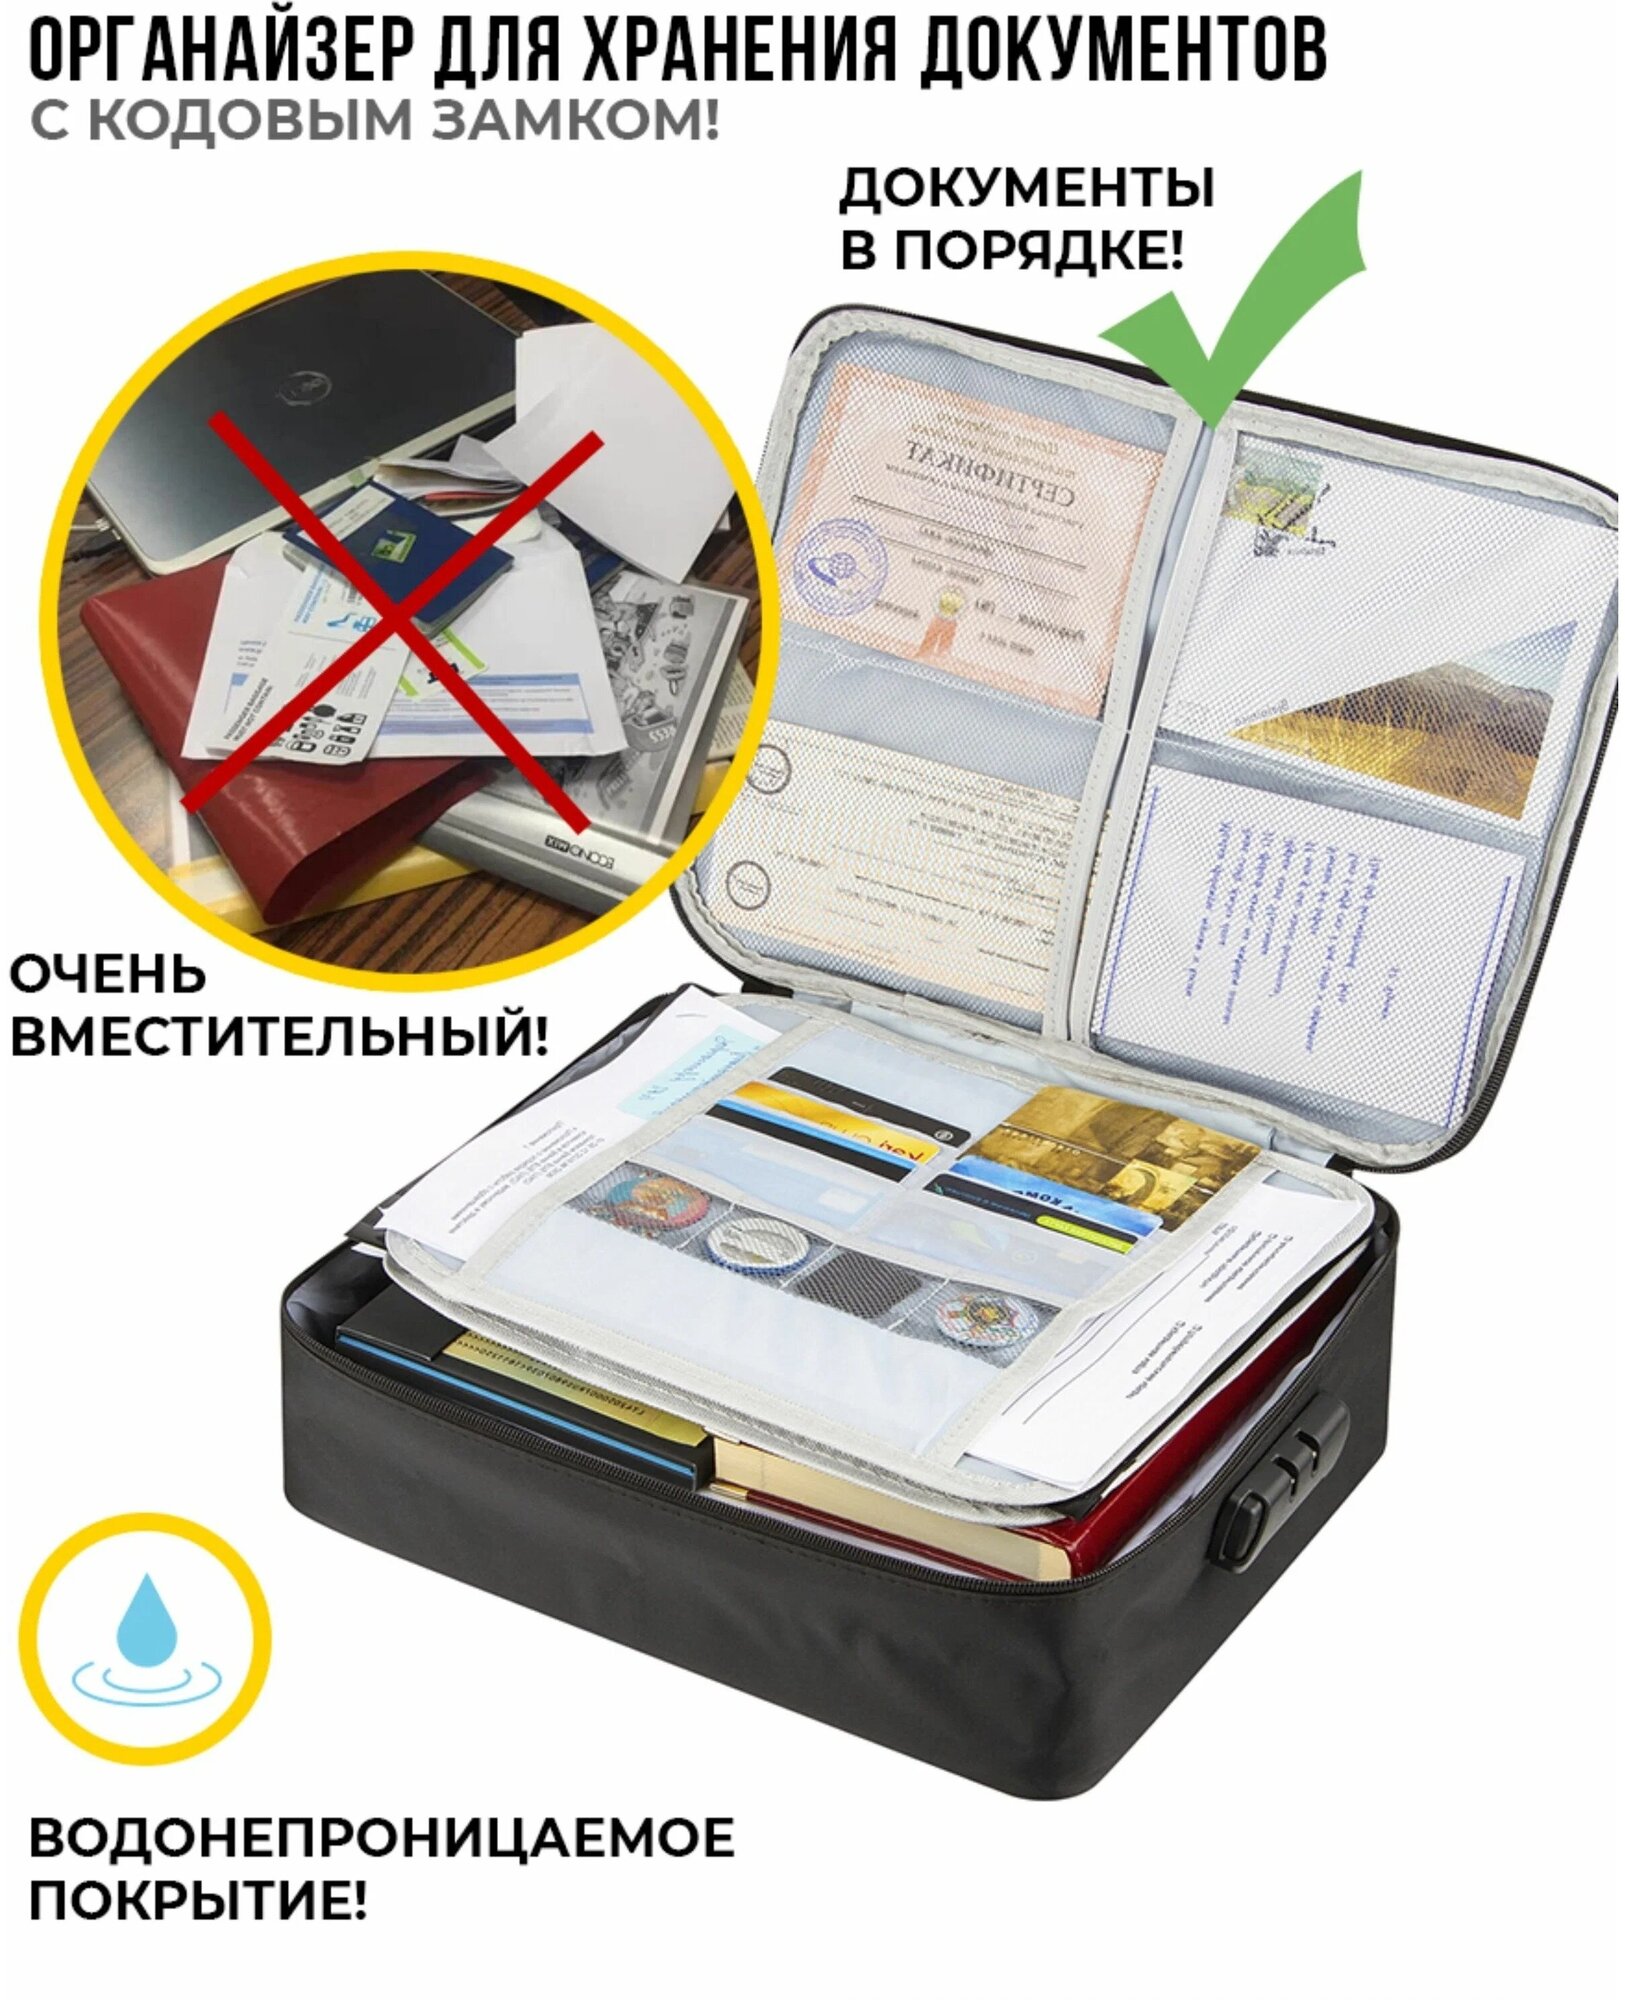 Органайзер для хранения документов с кодовым замком А4 дорожный папка сумка в поездку контейнер для вещей файлы кофр, цвет черный